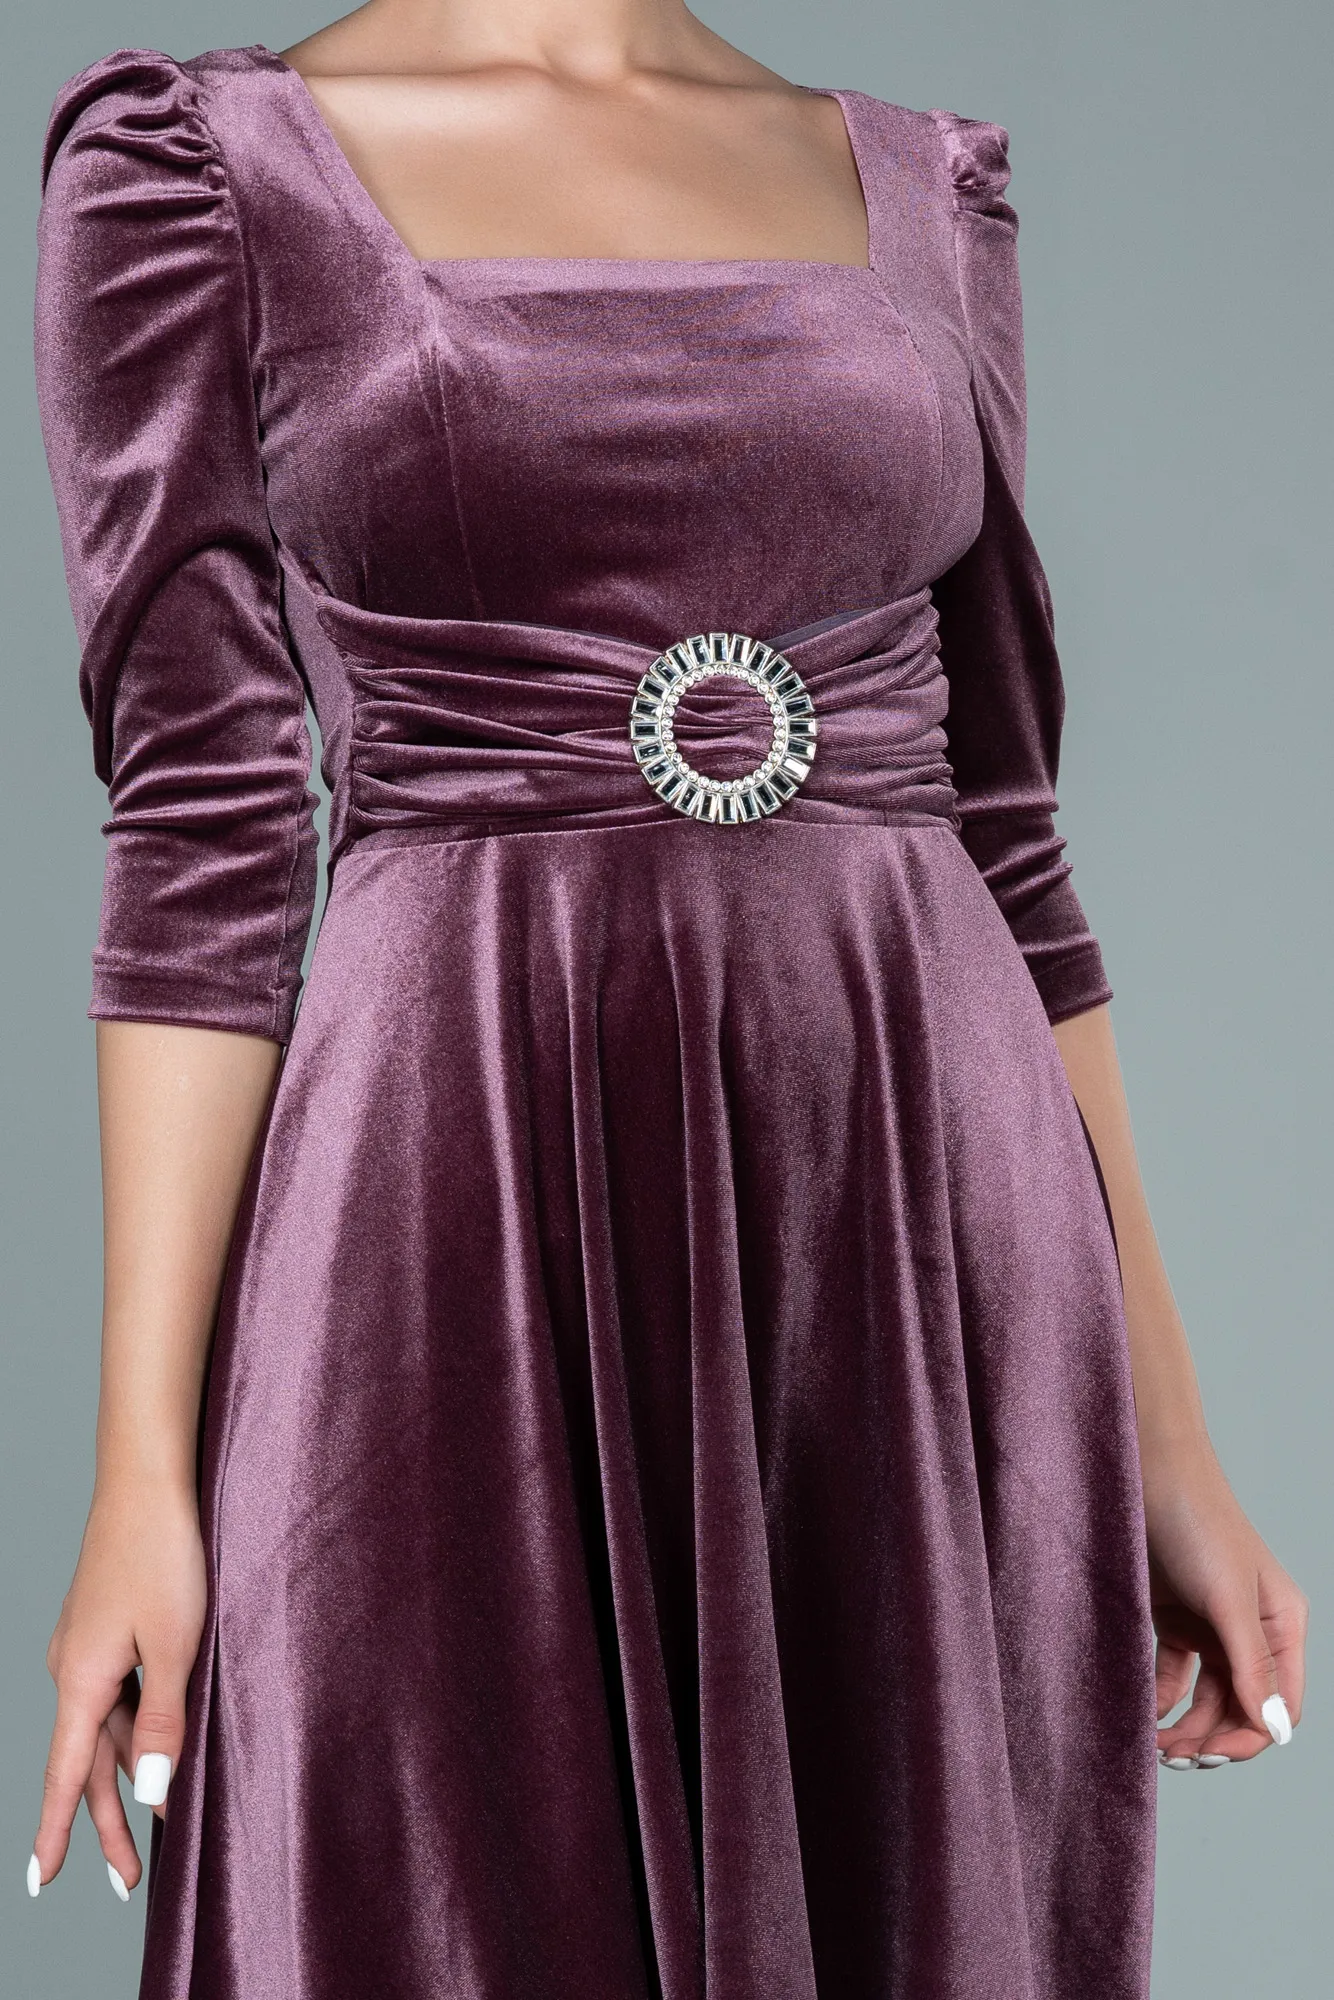 Rose Colored-Short Velvet Invitation Dress ABK1514